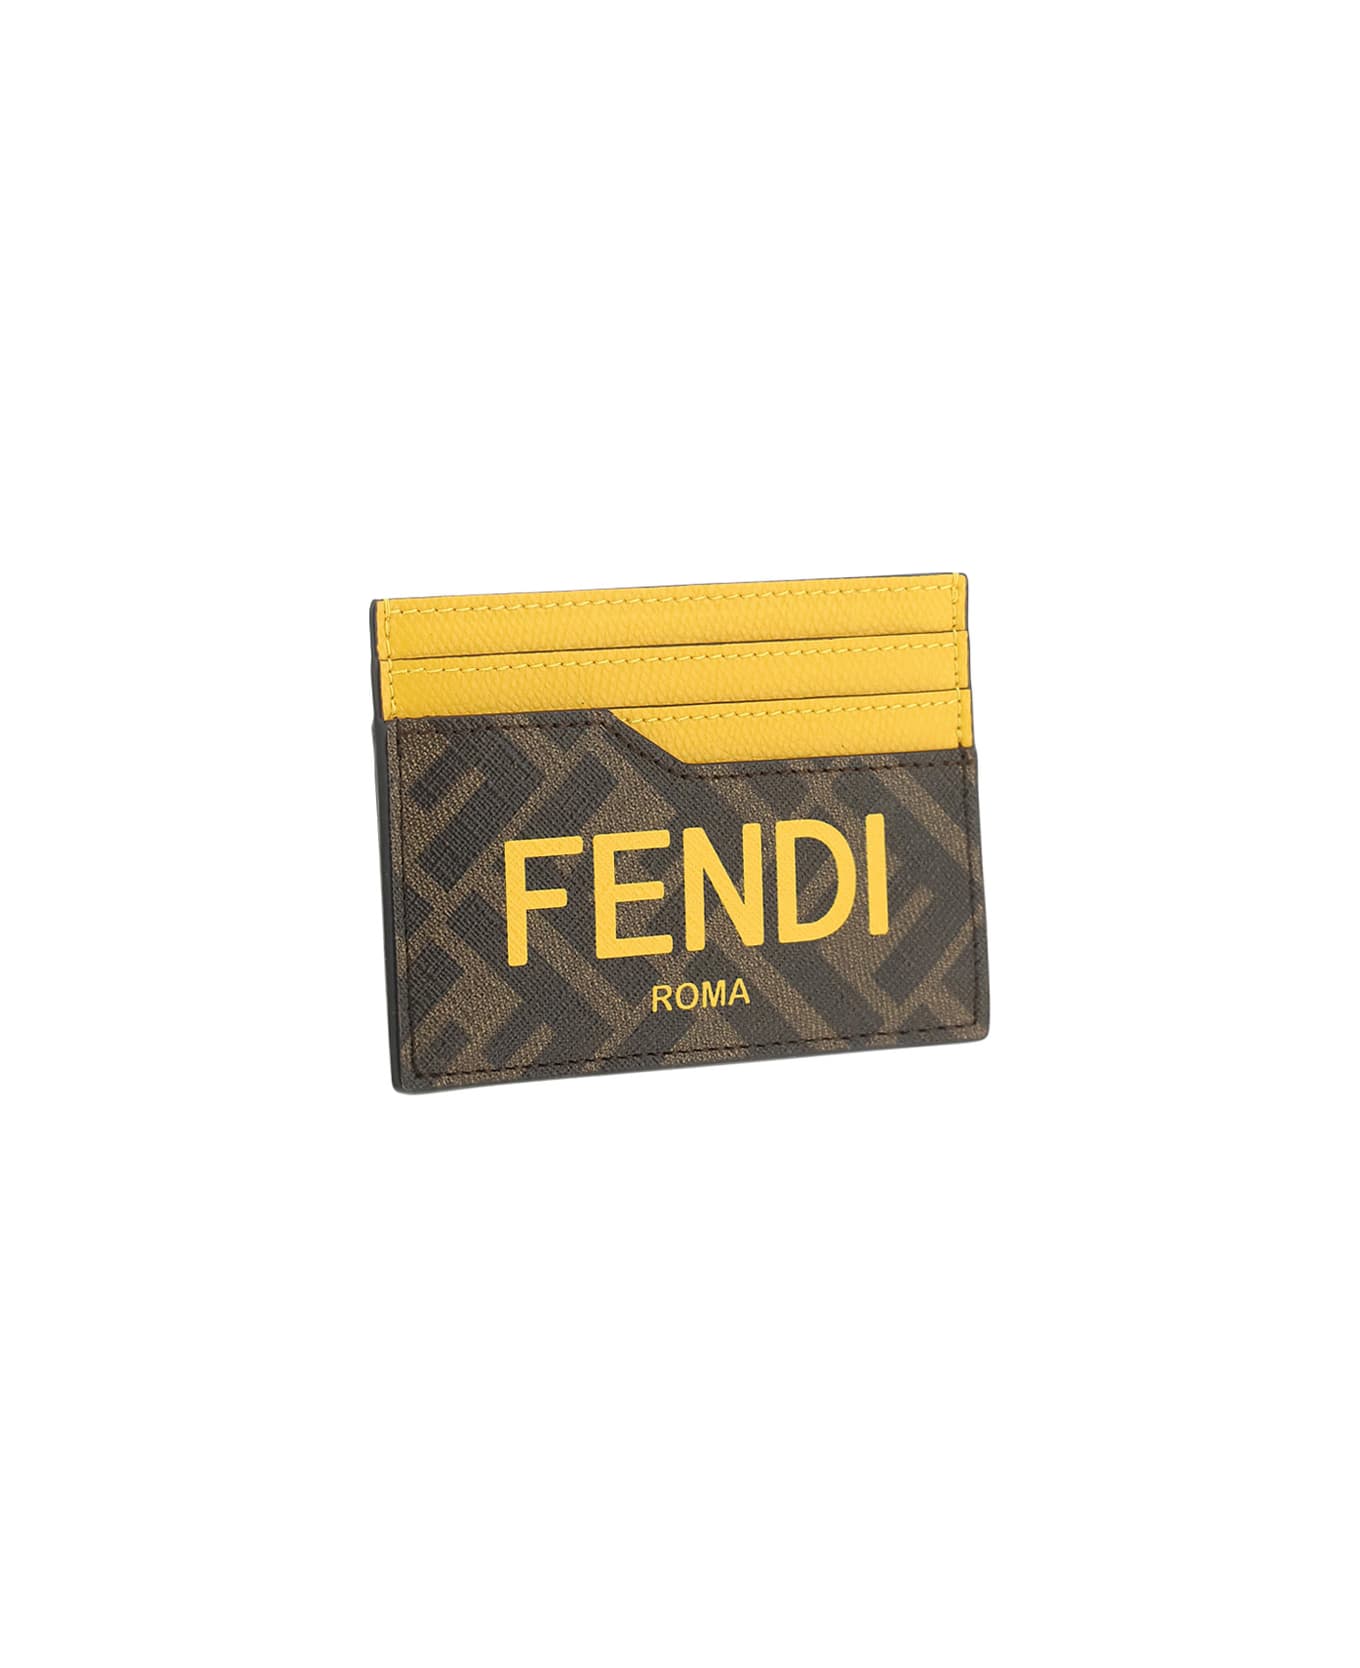 Fendi Ff Card Holder - Tbmr/giallo/sunfl 財布